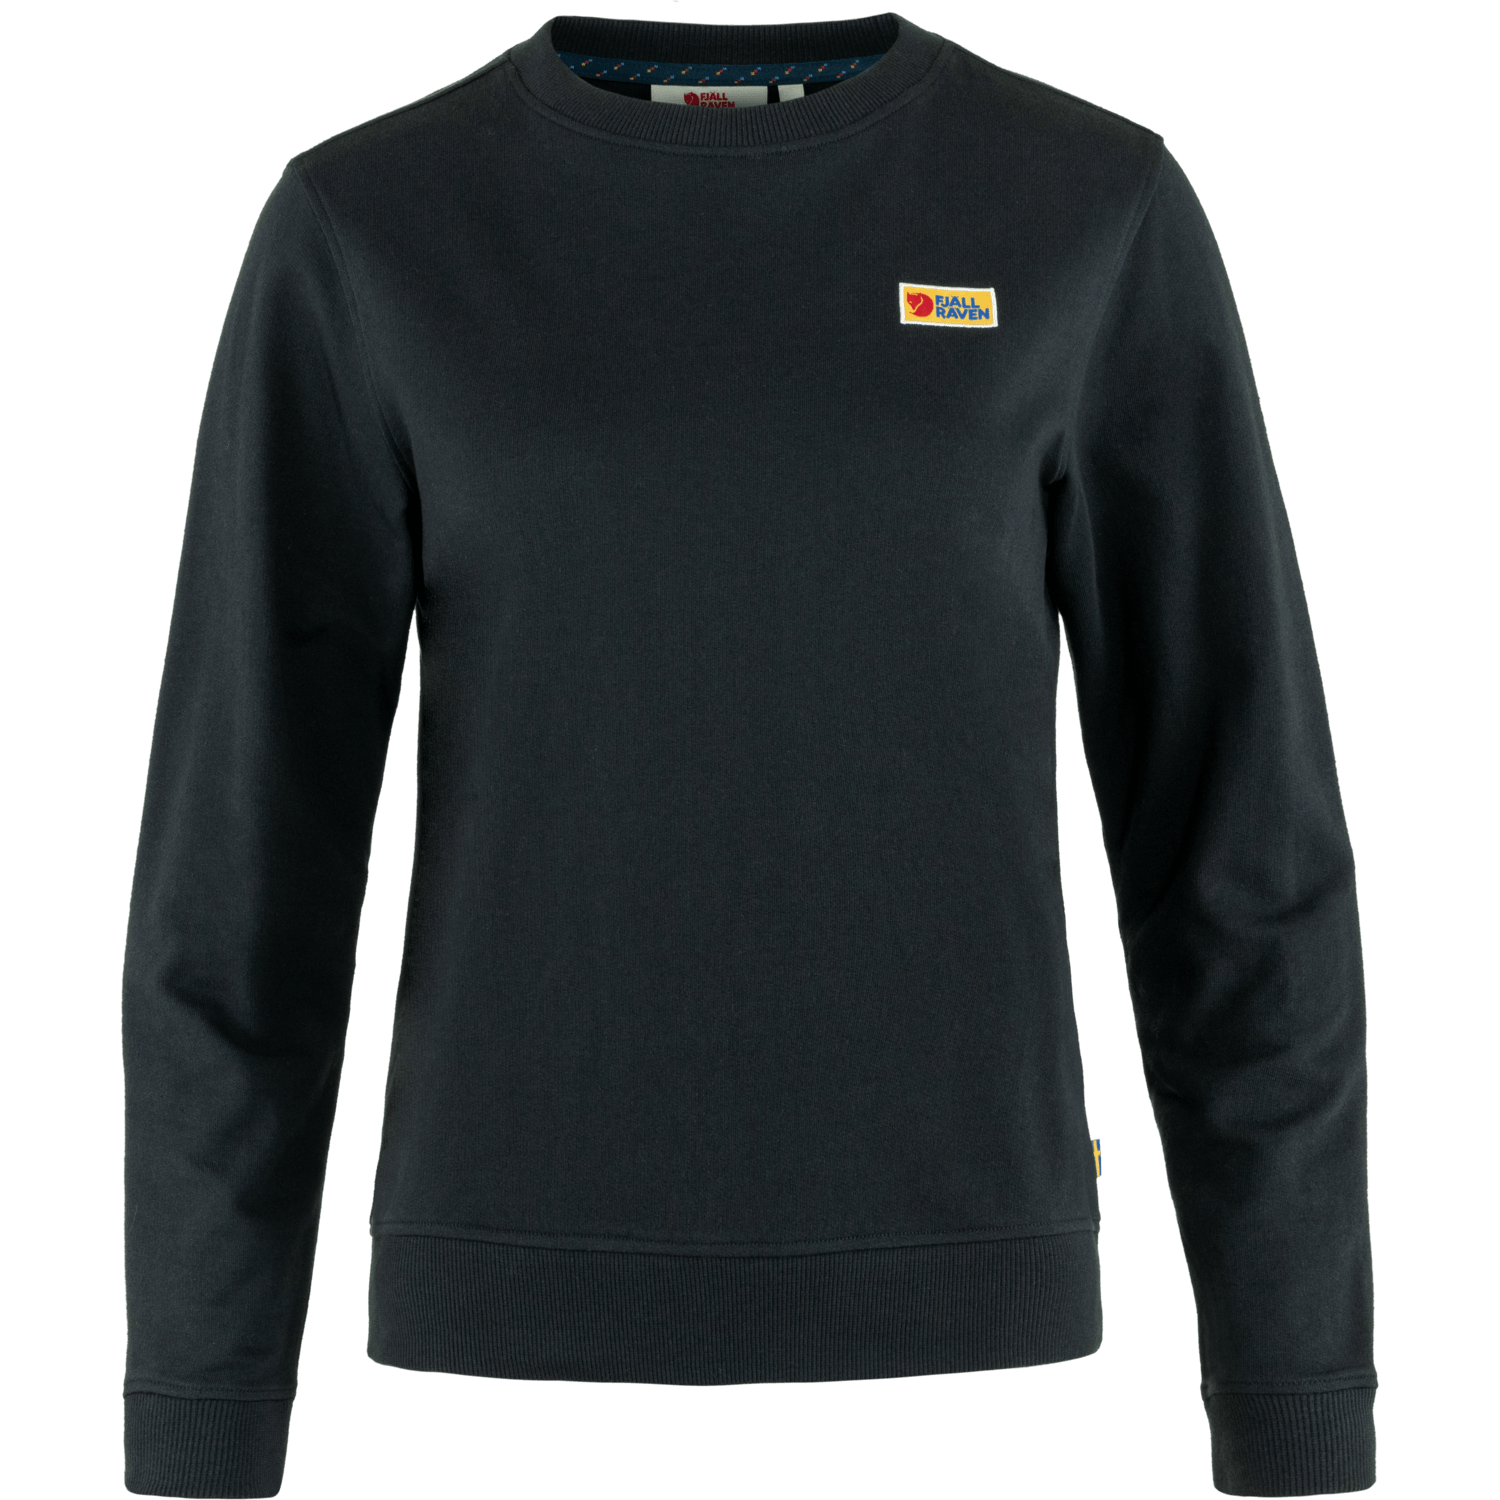 Fjällräven - W's Vardag Sweatshirt - 100% Organic Cotton - Weekendbee - sustainable sportswear